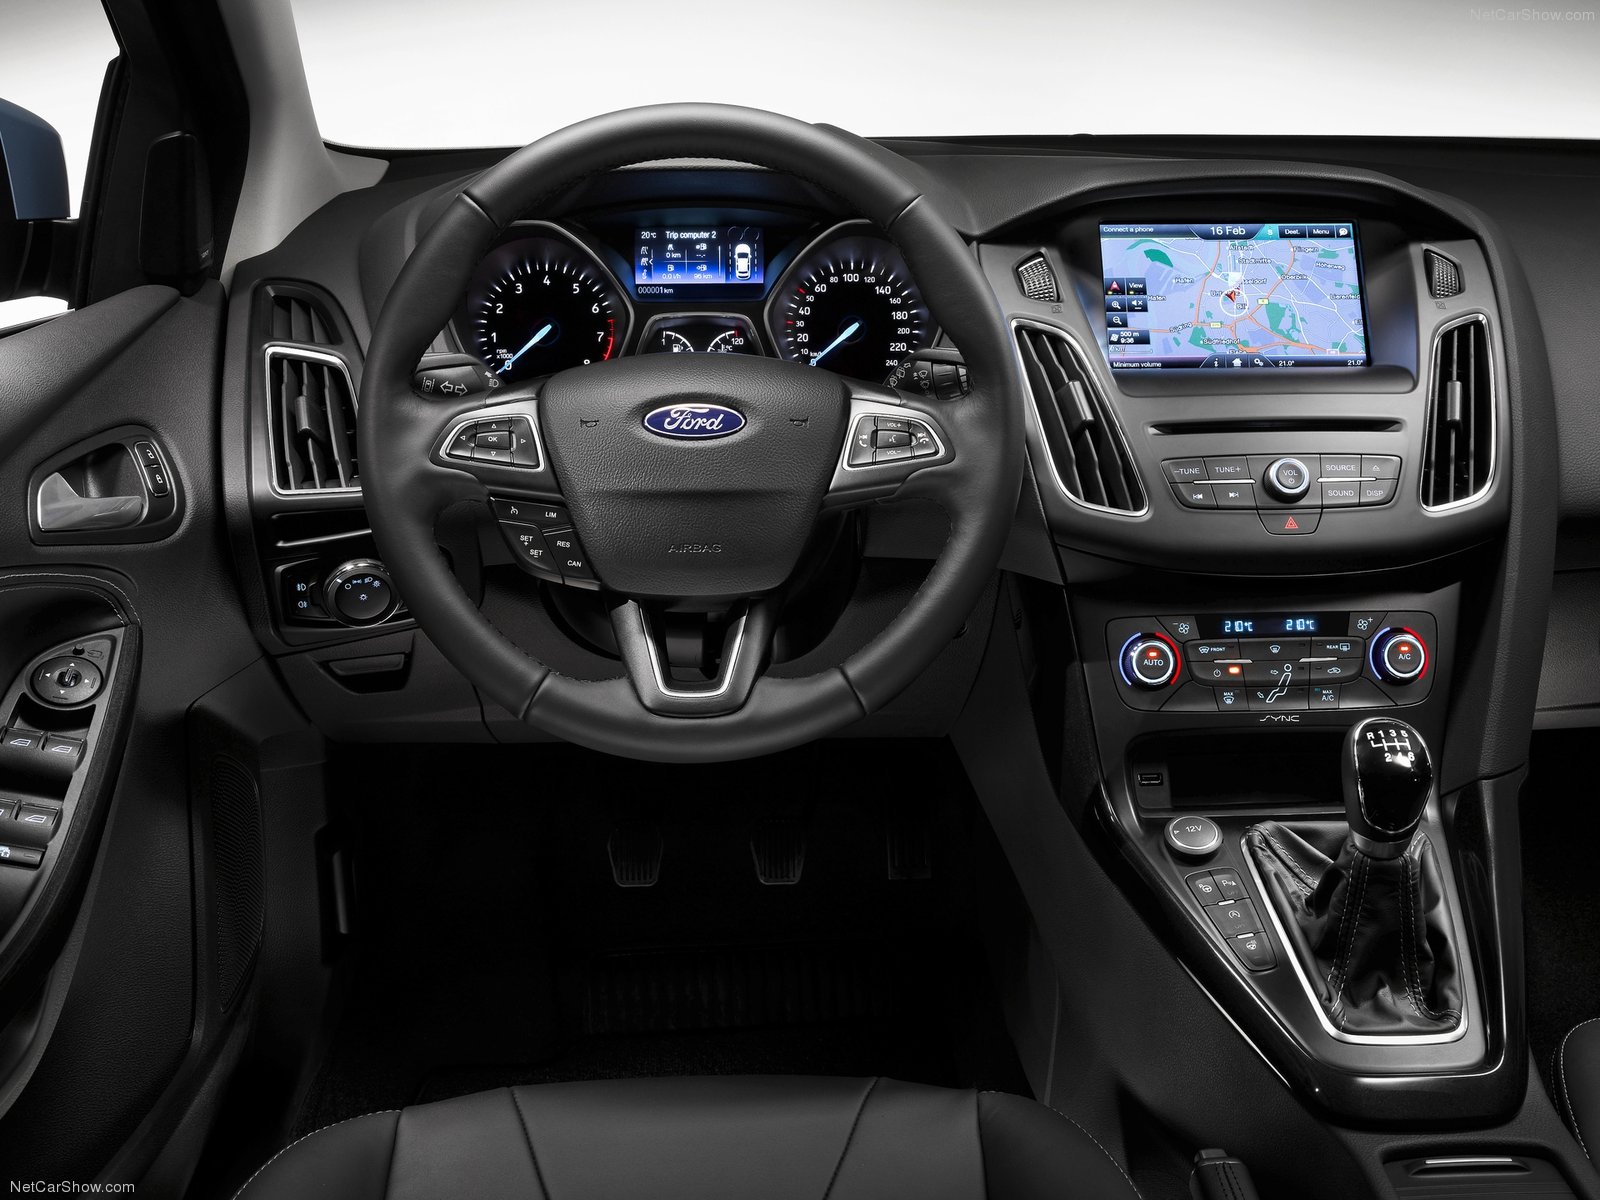 Отзывы о Ford Focus 3 2015 (Форд Фокус 3 2015) с ФОТО...